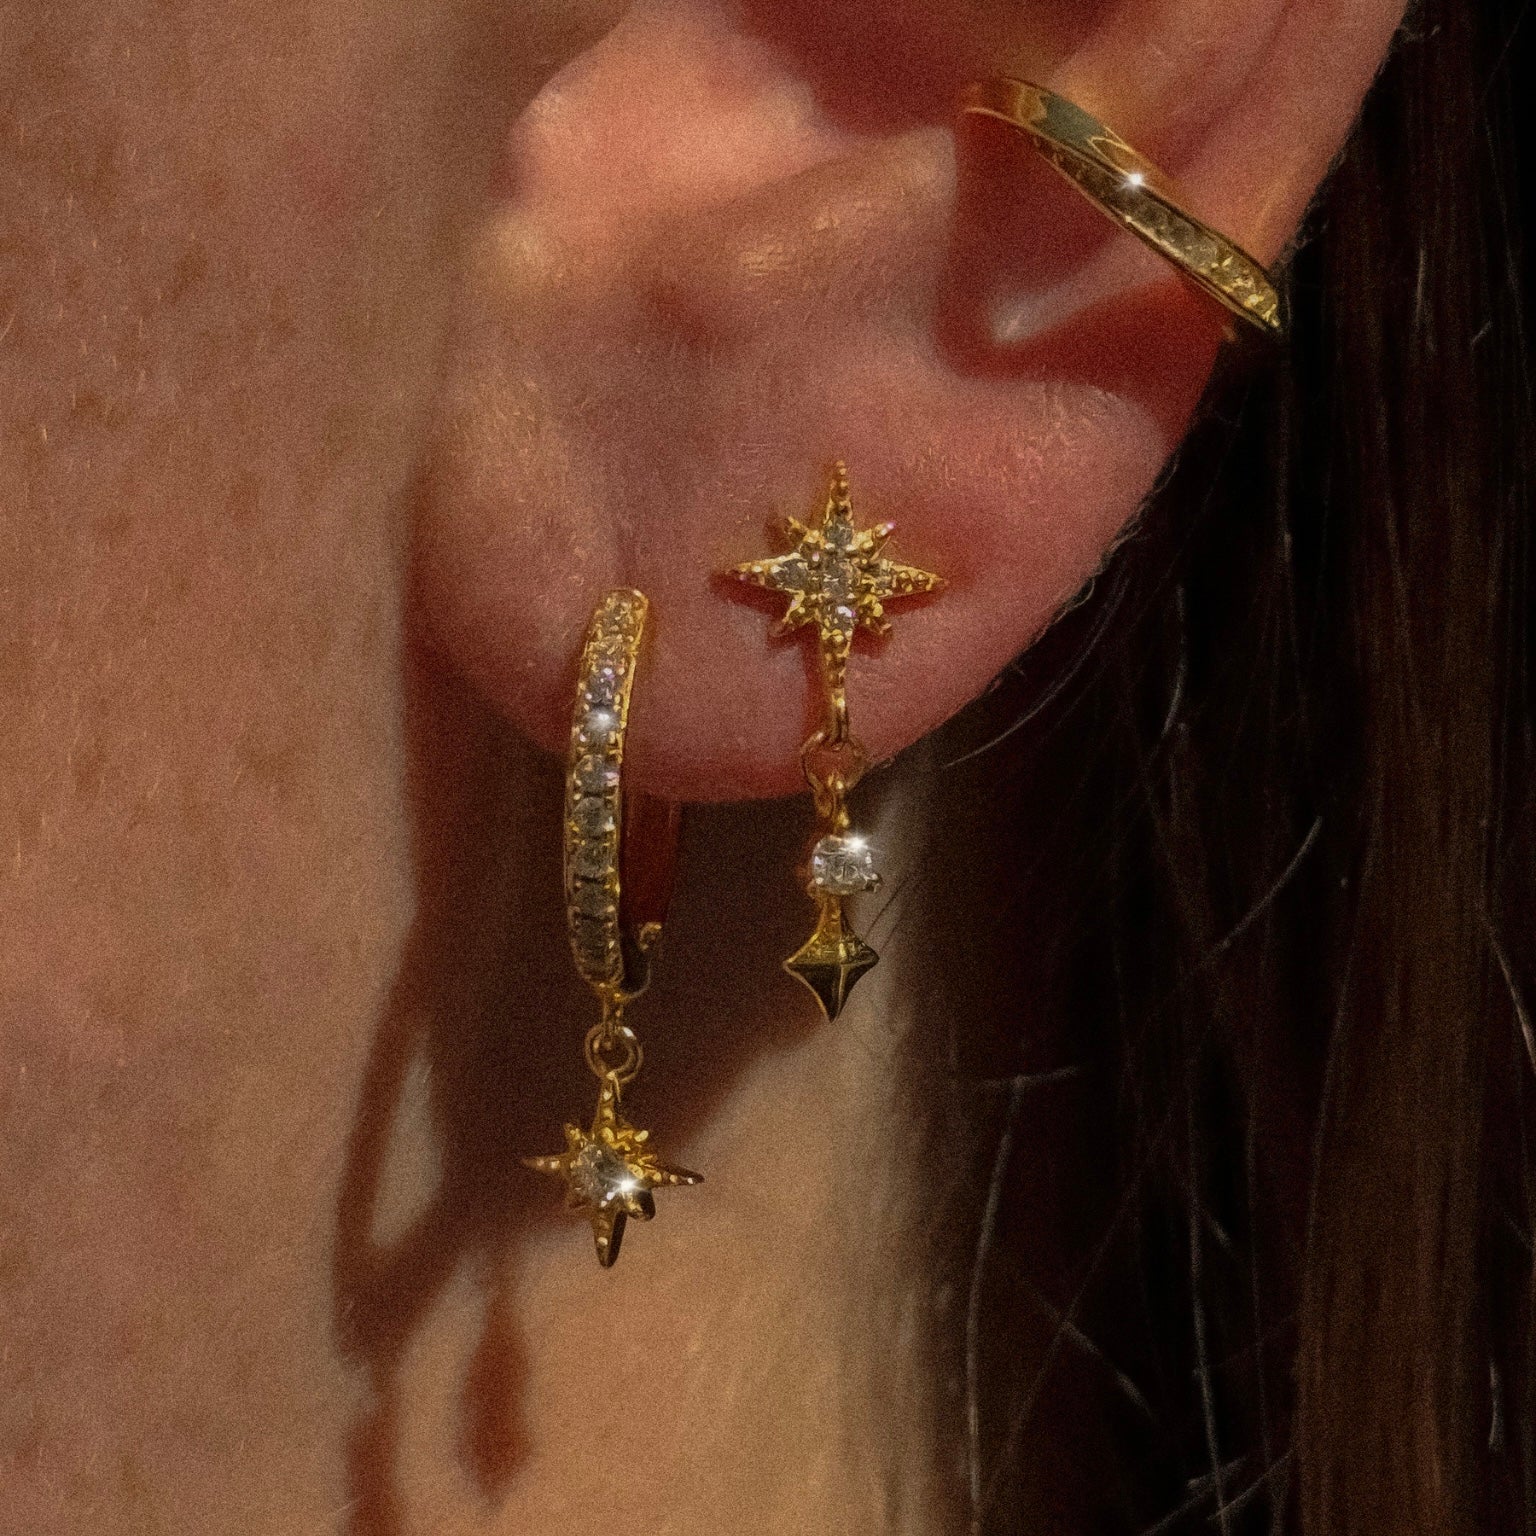 Hoft Studio dangle earring jewelry in gold plate